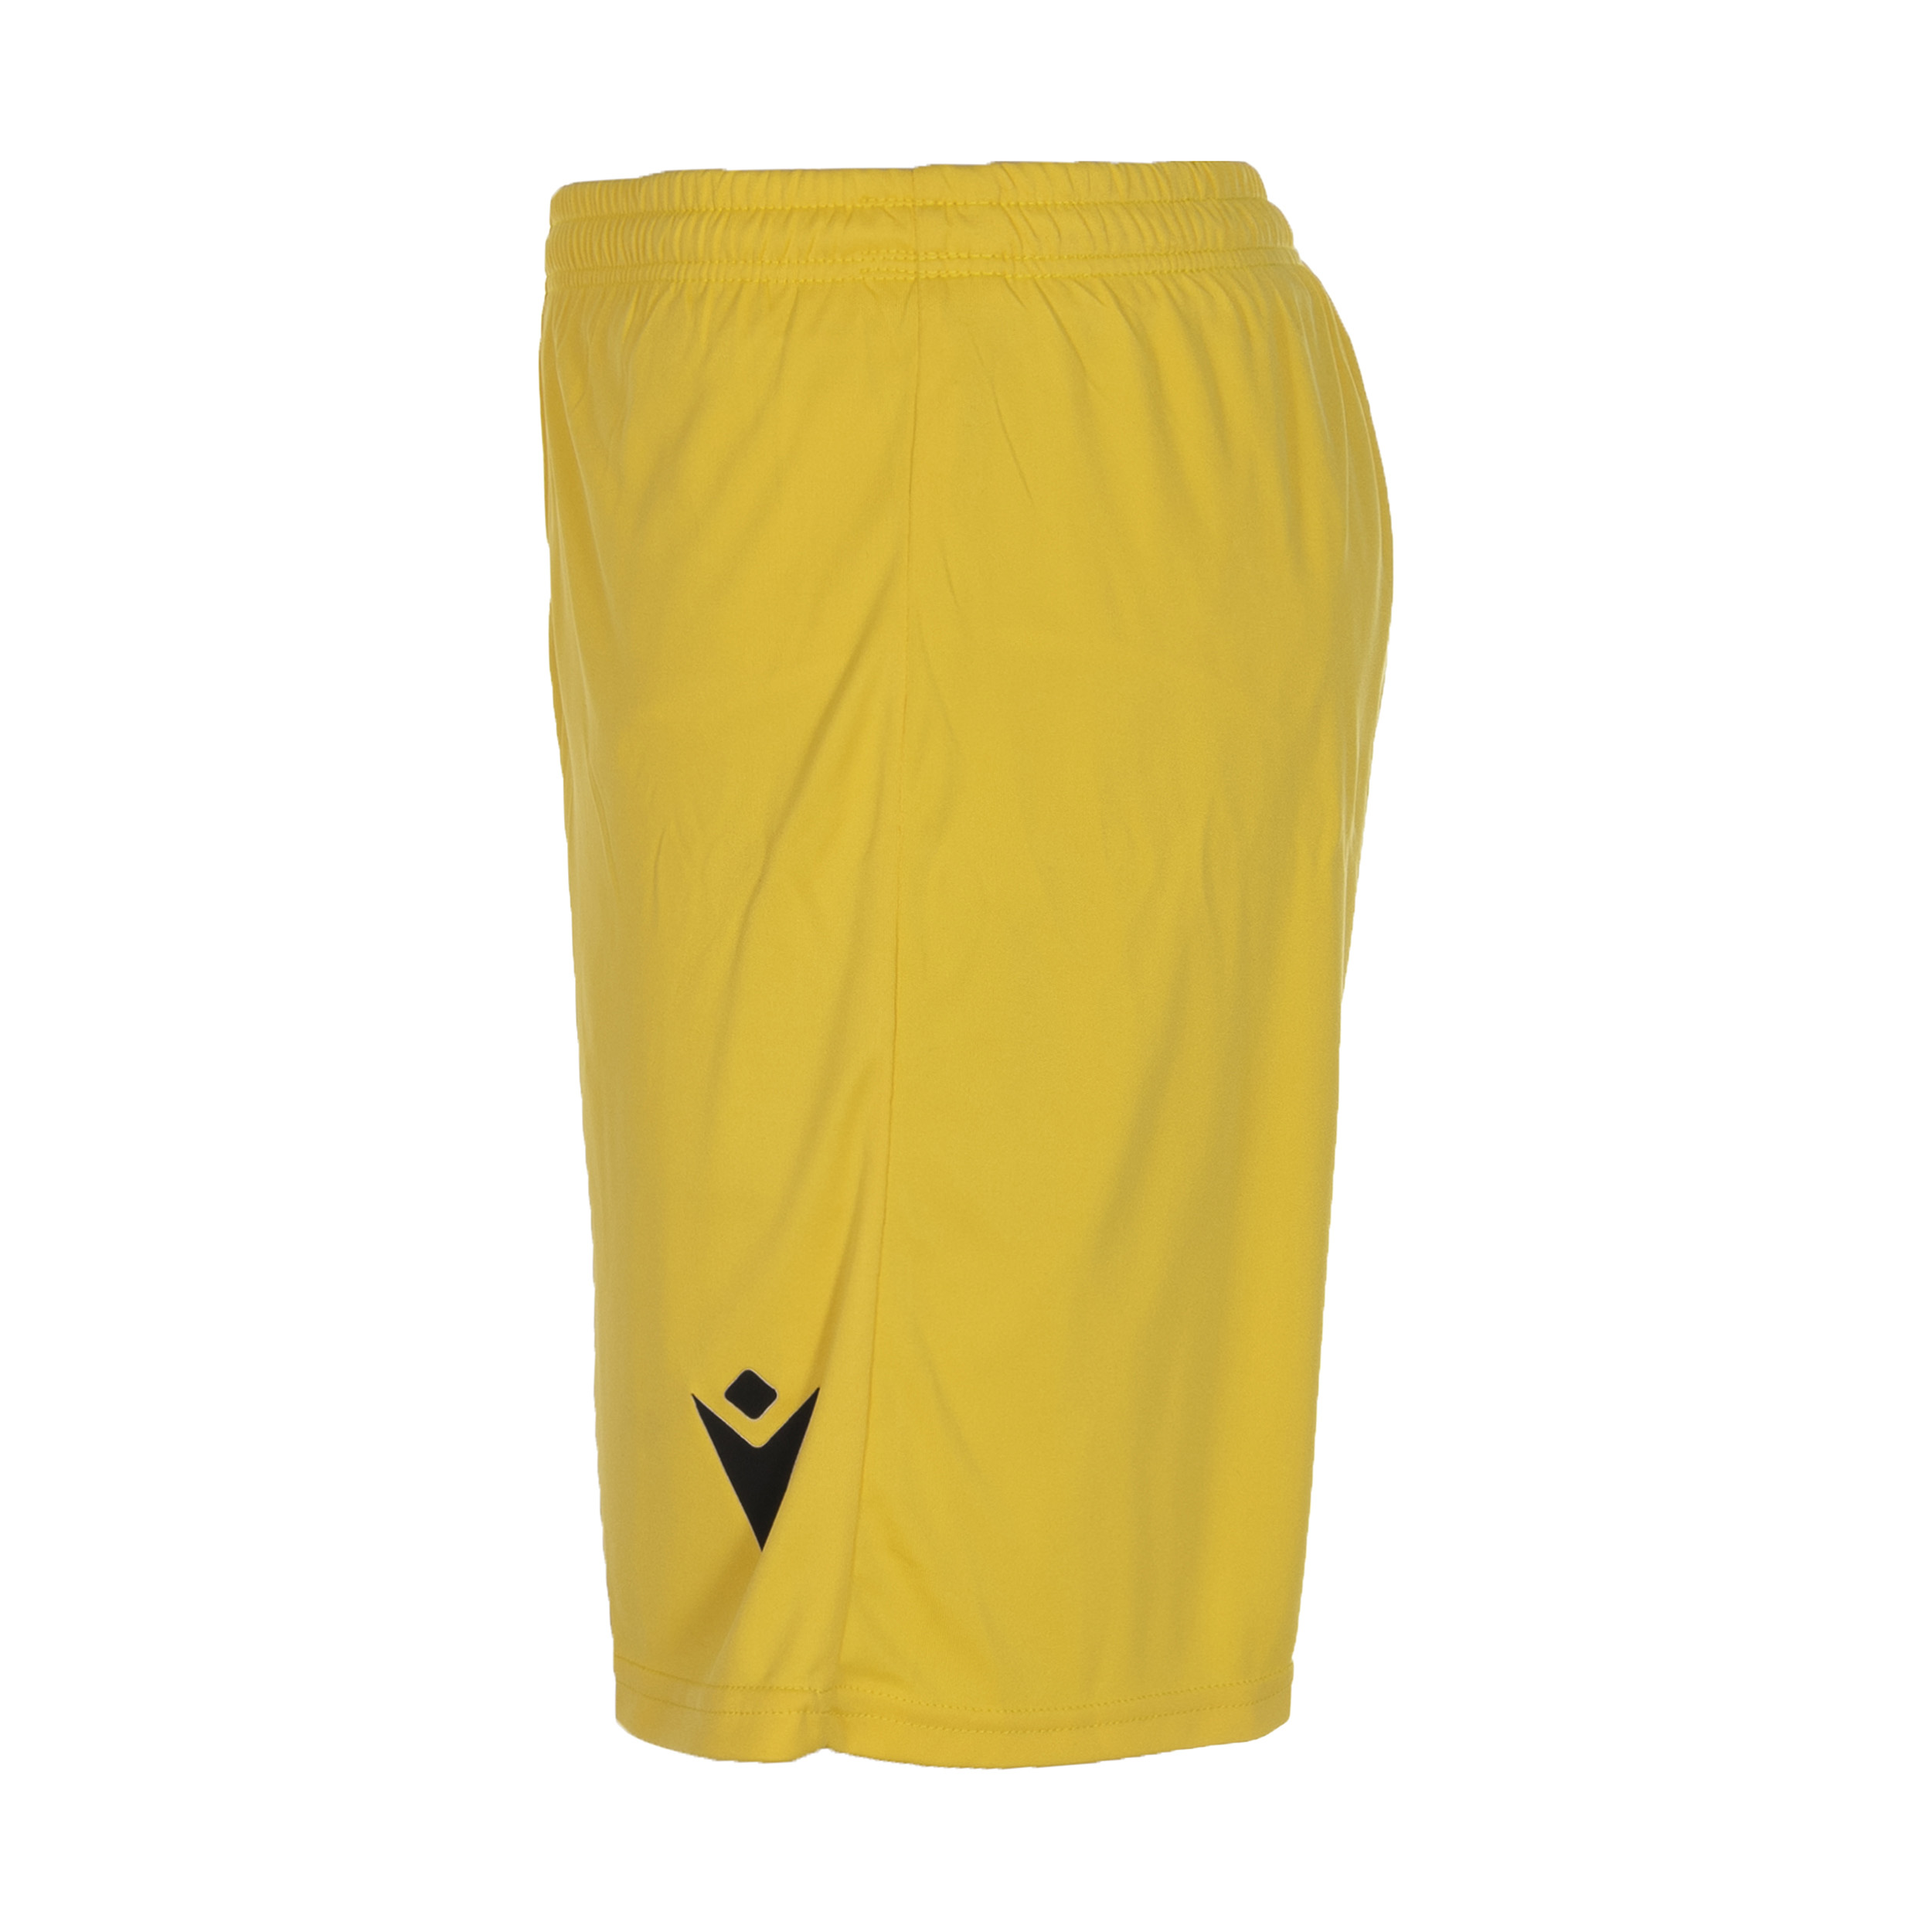  ست تی شرت و شلوارک ورزشی مردانه مکرون مدل فارست رنگ زرد -  - 3